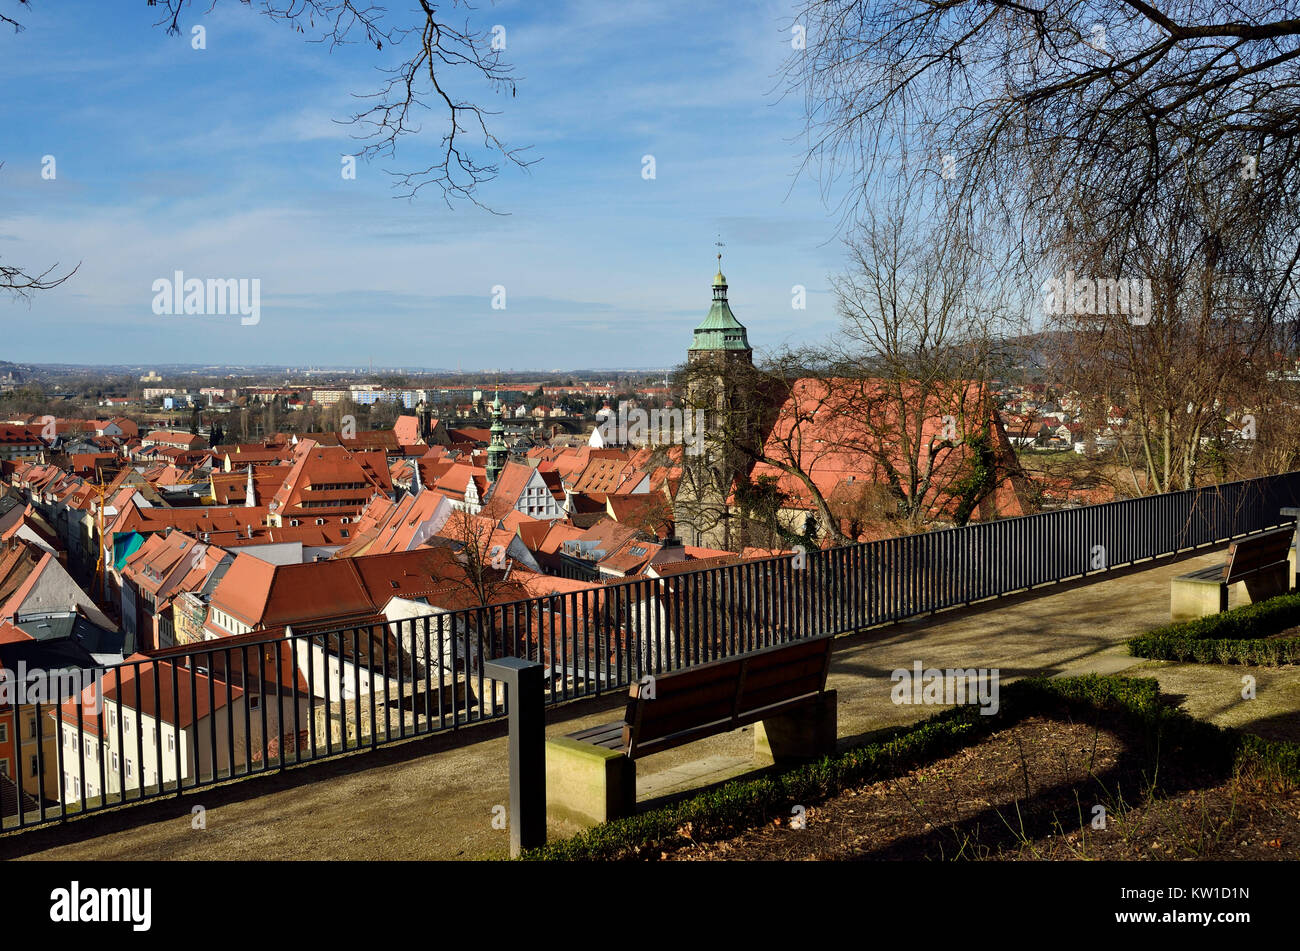 Pirna, Altstadtansicht von derTerrasse am Schlossberg Foto Stock